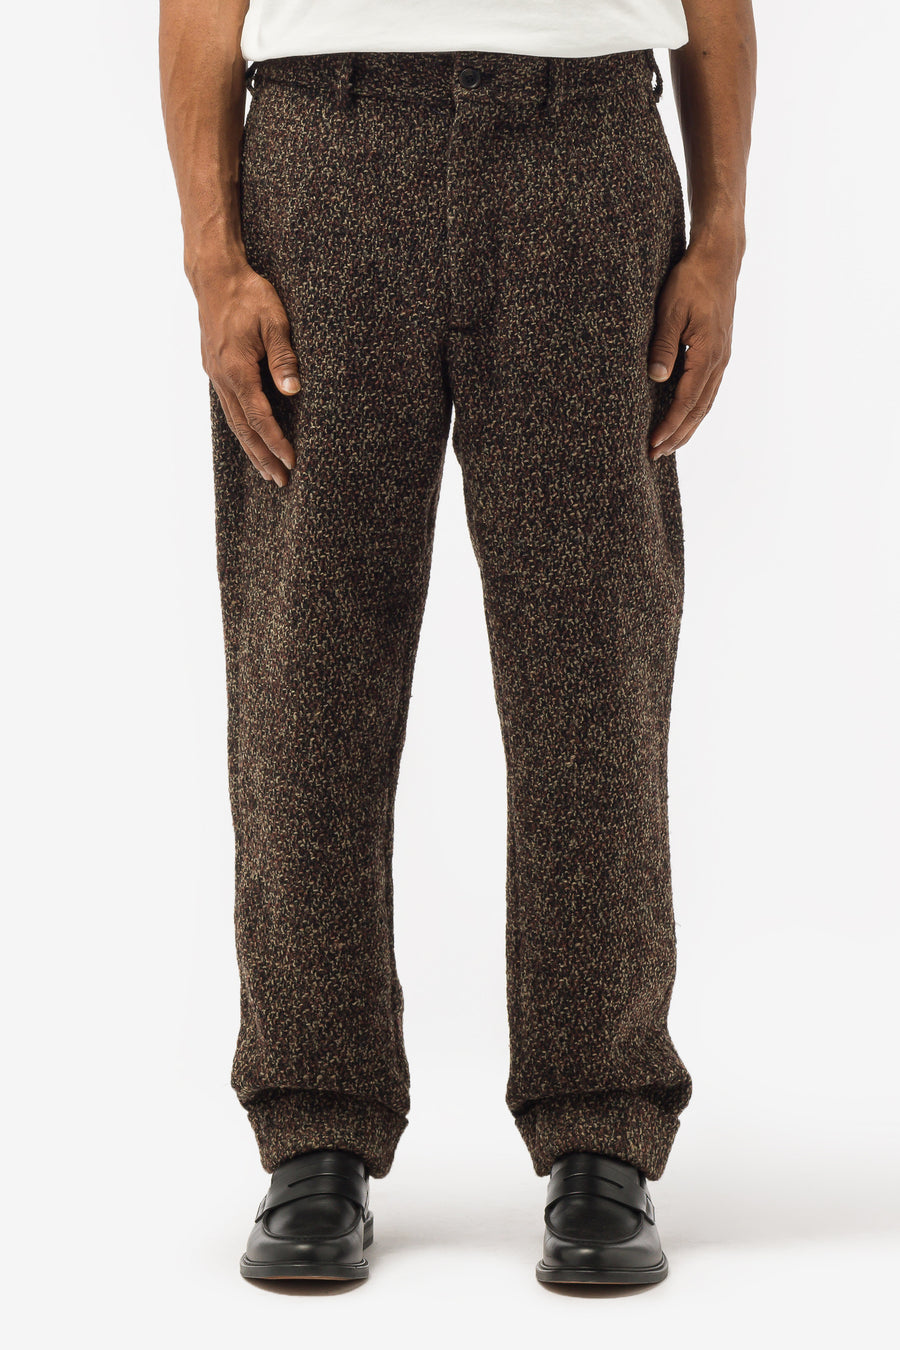 Engineered Garments - Andover Pants in Dark Brown Poly Wool